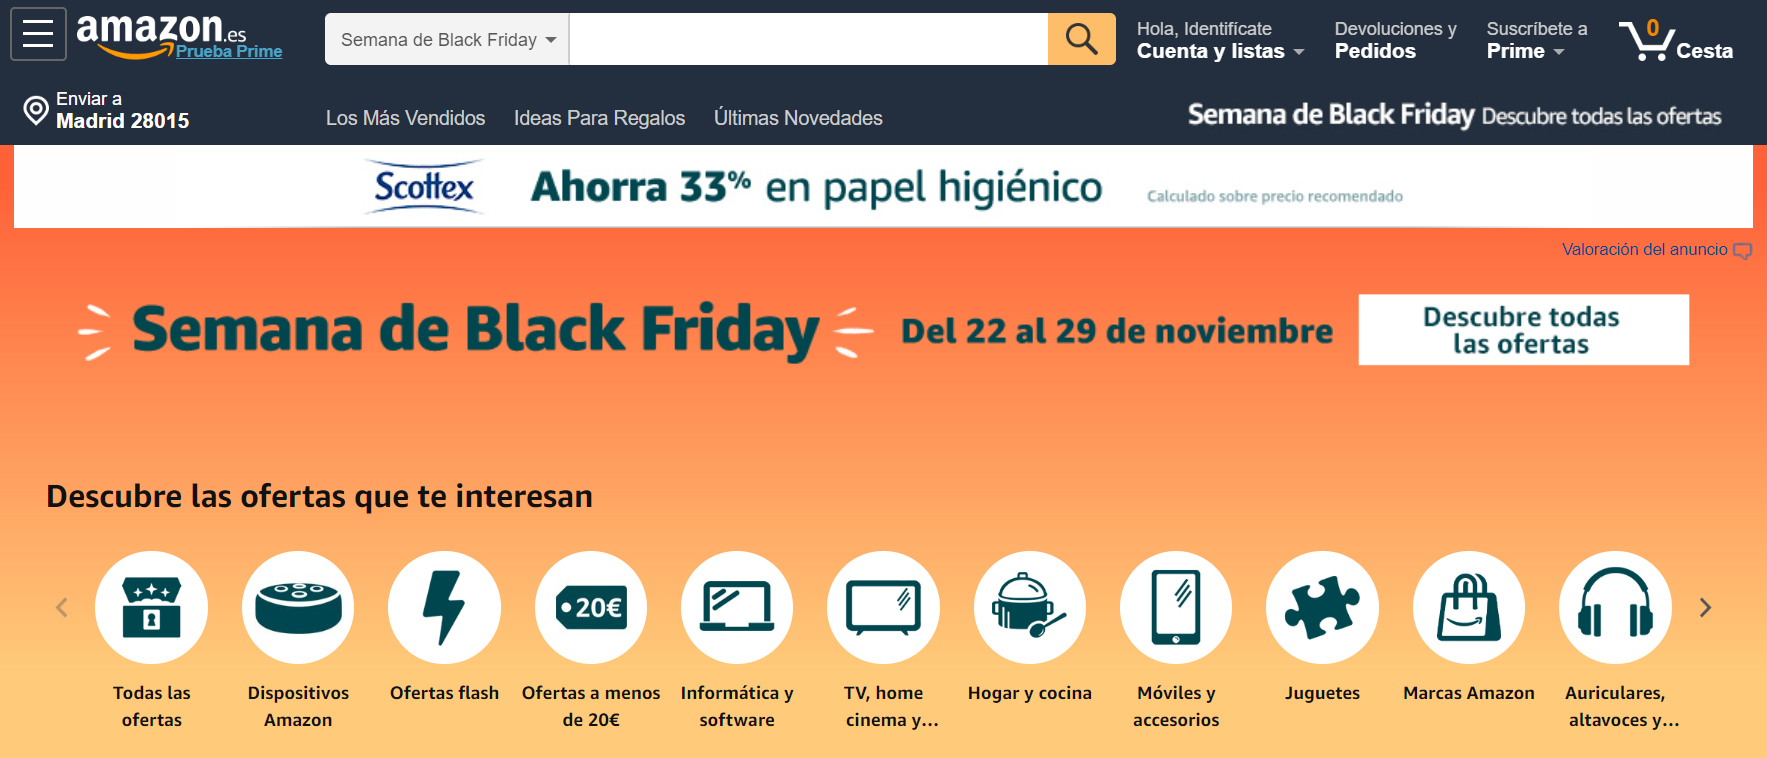 Amazon abre espacios físicos durante la fiesta del consumo